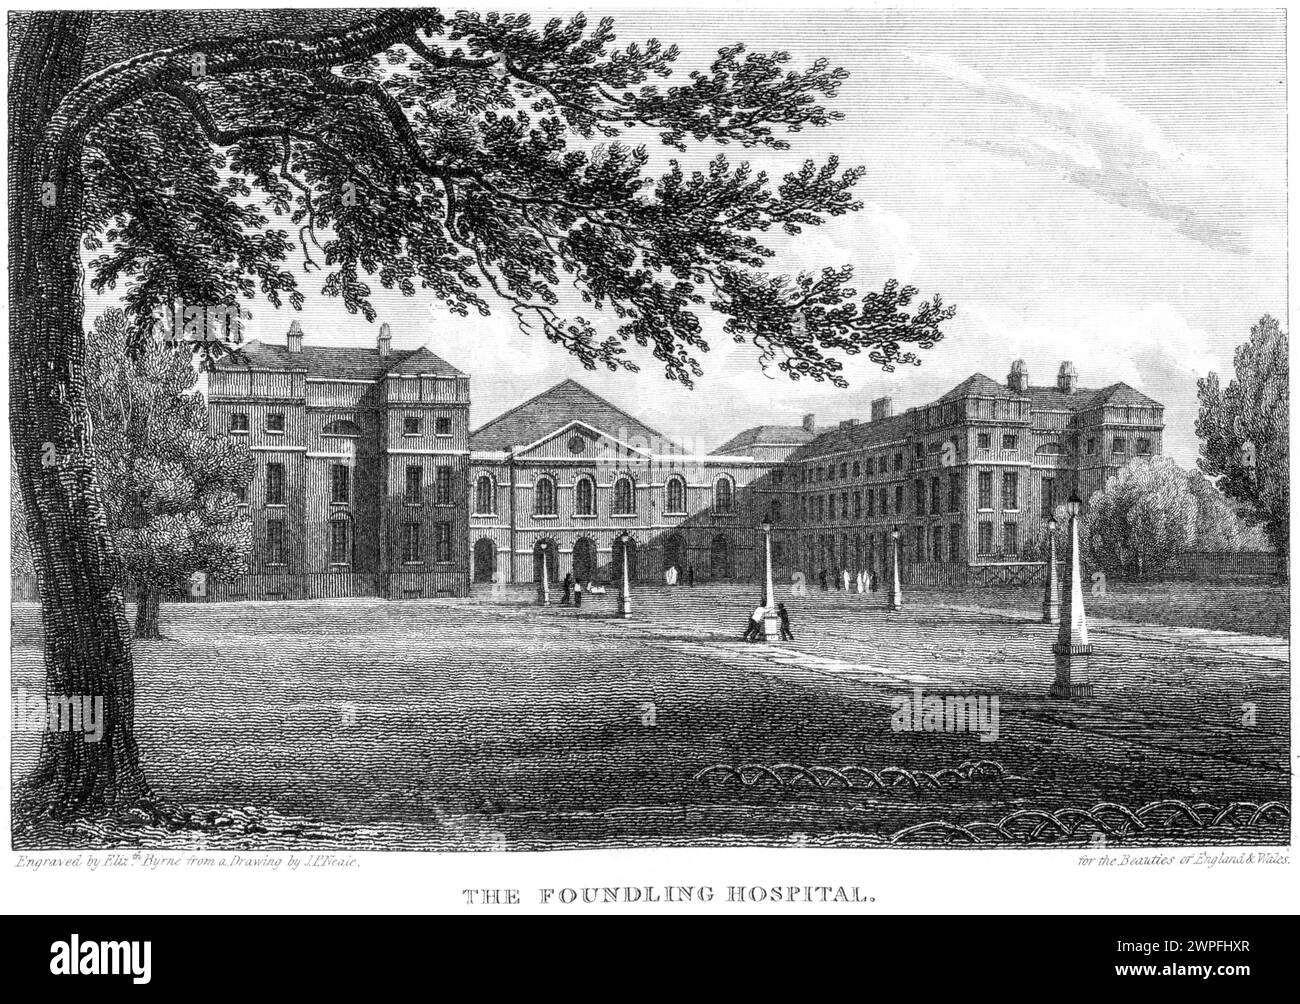 Ein Stich mit dem Titel The Foundling Hospital, London UK, scannt in hoher Auflösung aus einem Buch, das um 1815 veröffentlicht wurde. Dieses Bild wird als fre angesehen Stockfoto